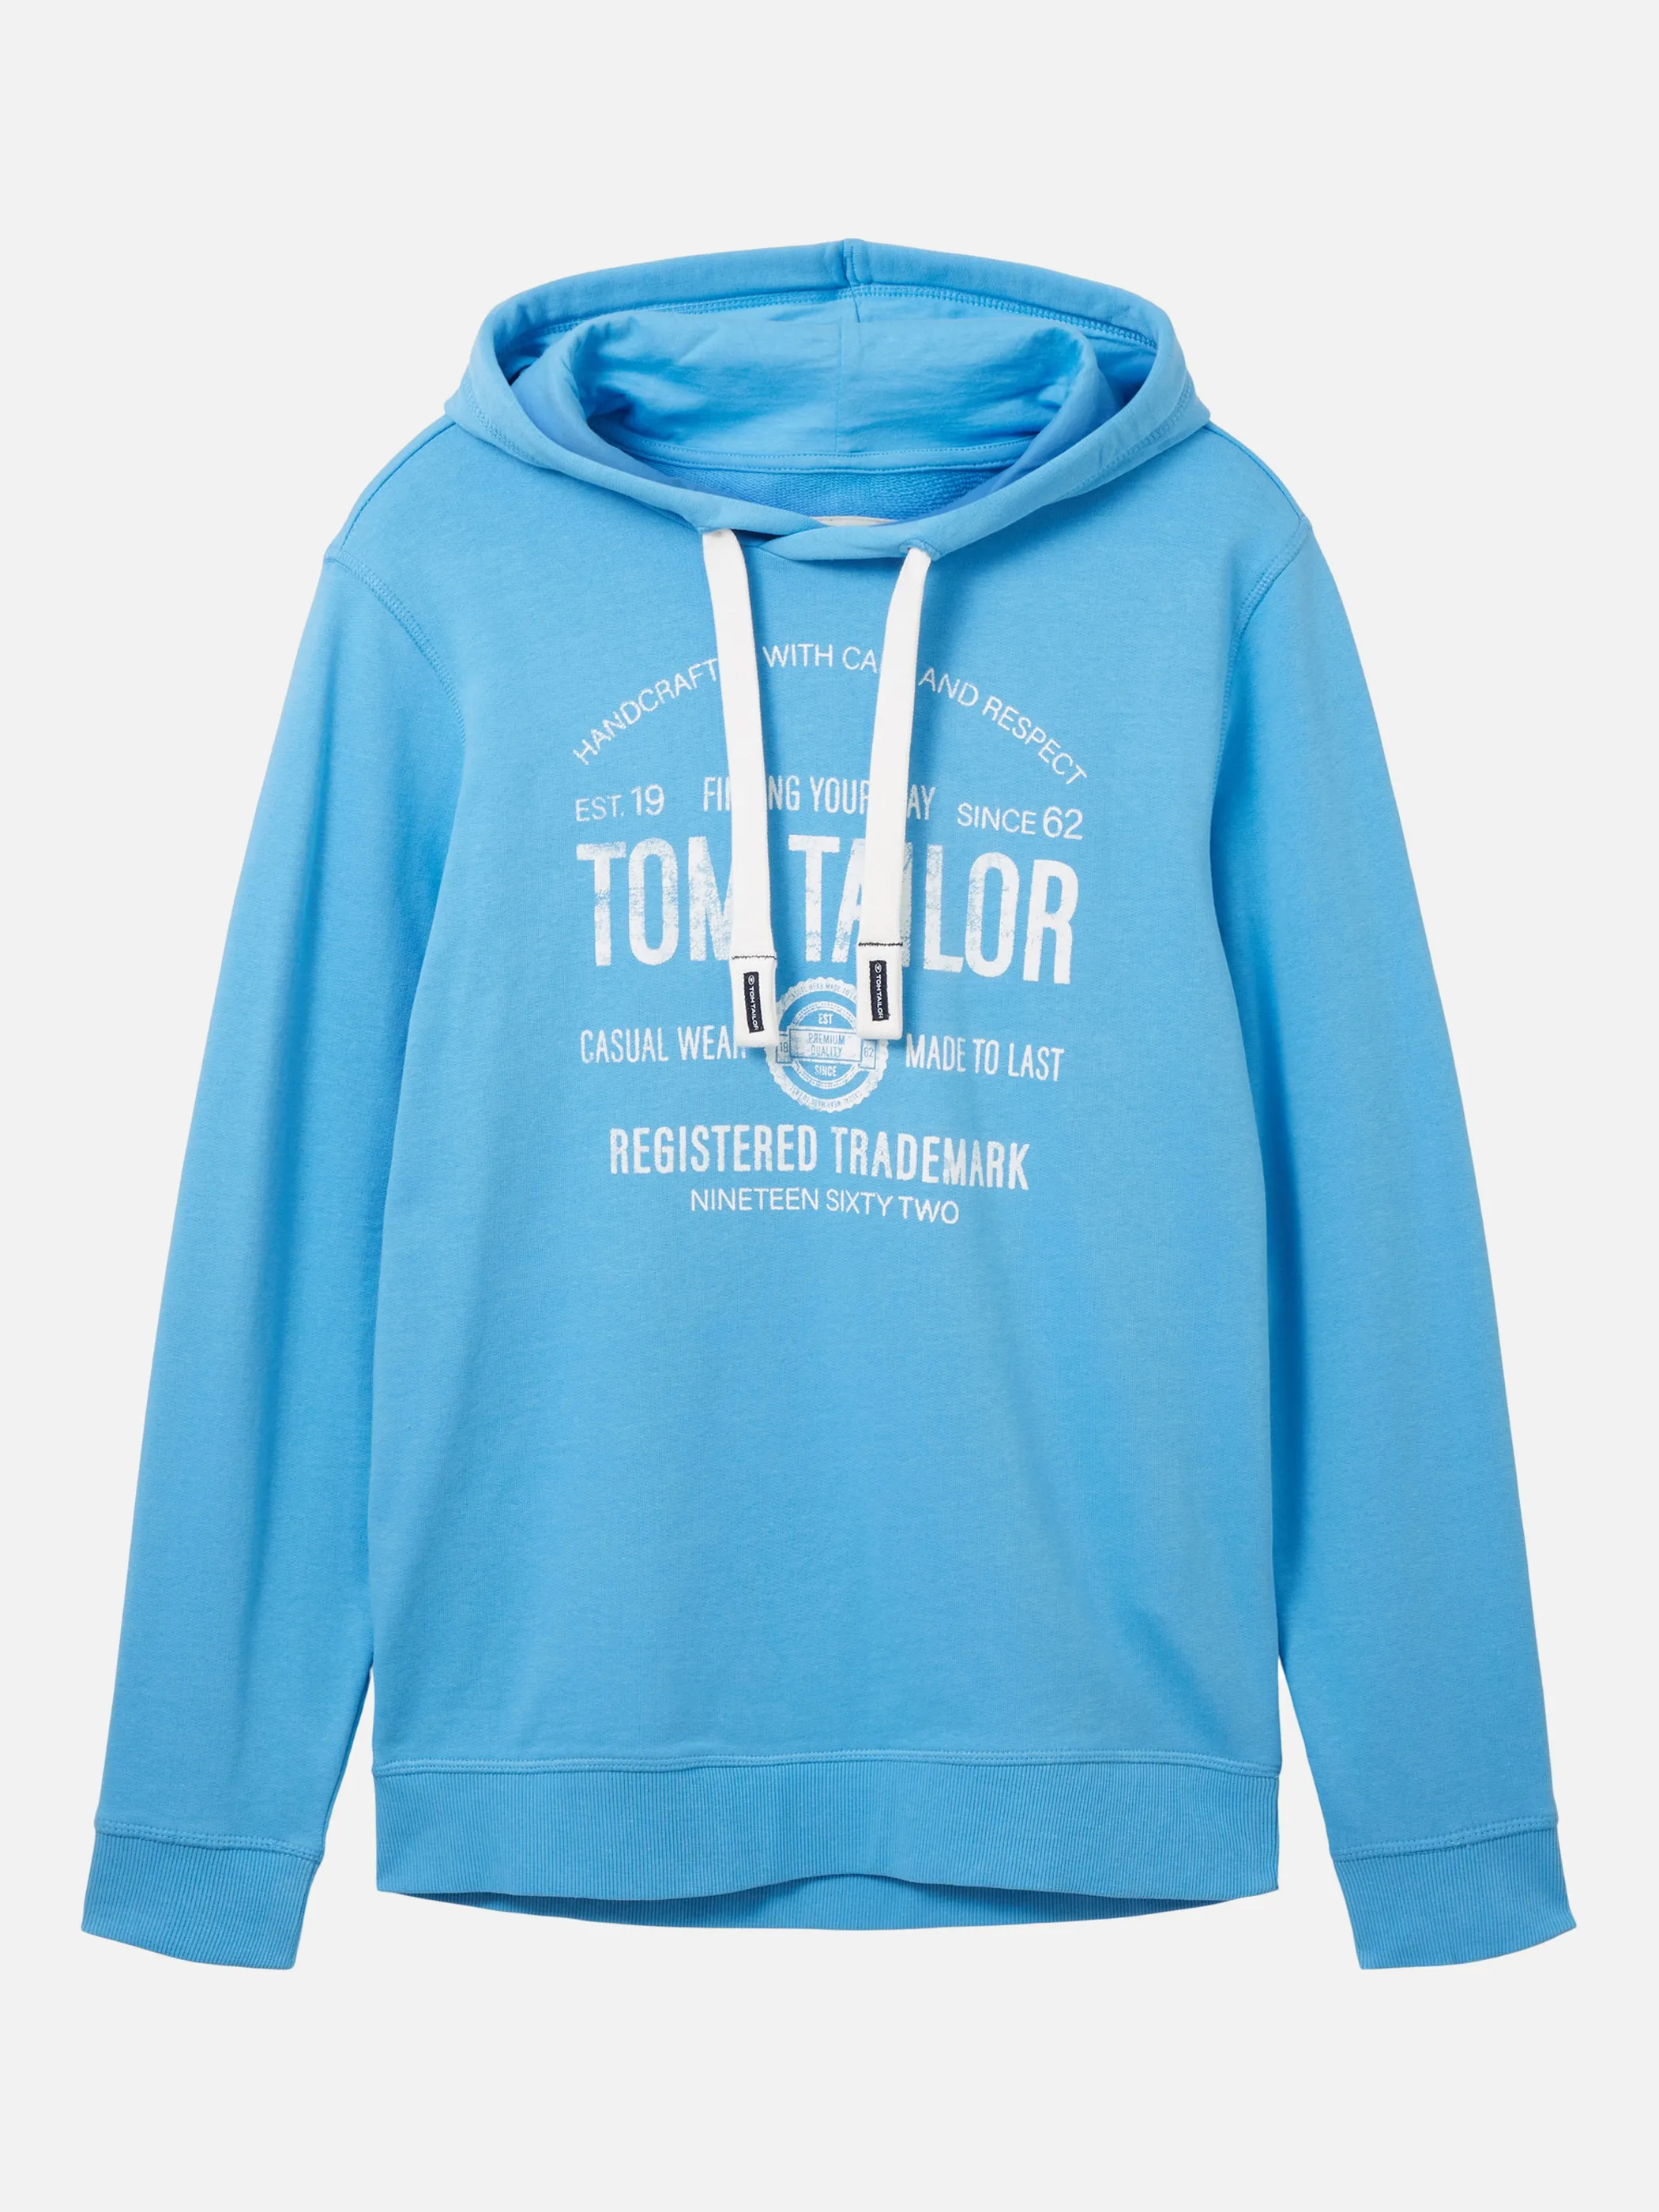 Tom Tailor 1038605 hoodie with print Blau 880532 18395 1